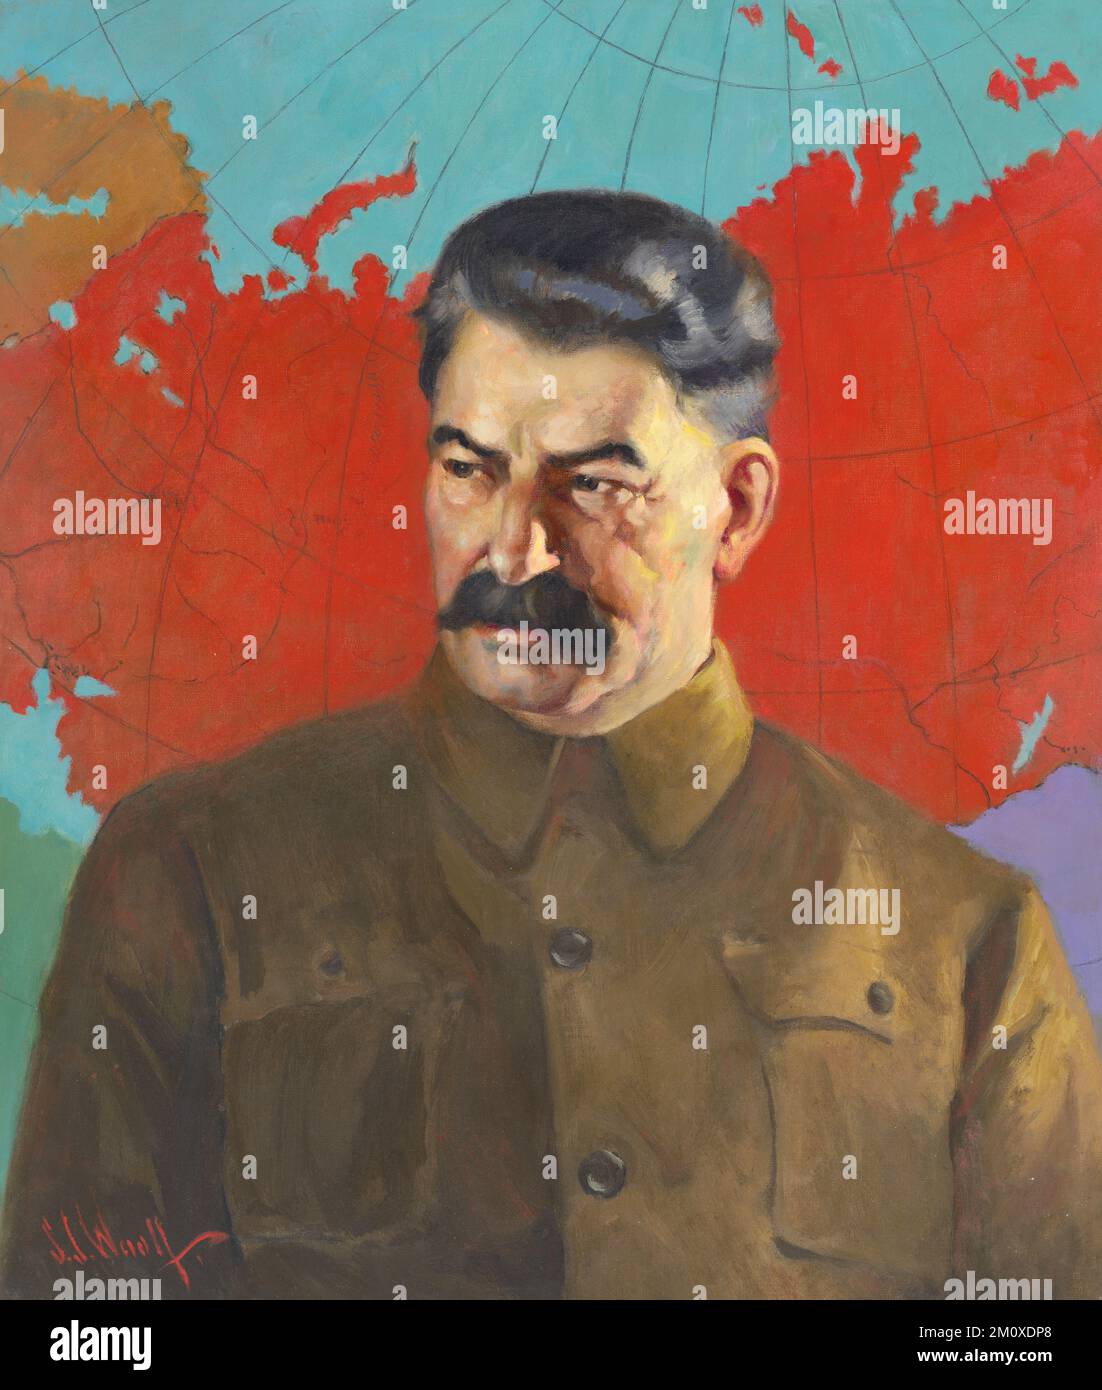 Portrait de Joseph Staline, chef de l'Union soviétique de 1924 à 1953, peinture de Samuel Johnson Woolf ca. 1937. Staline est photographié en face d'une carte de l'URSS. Banque D'Images